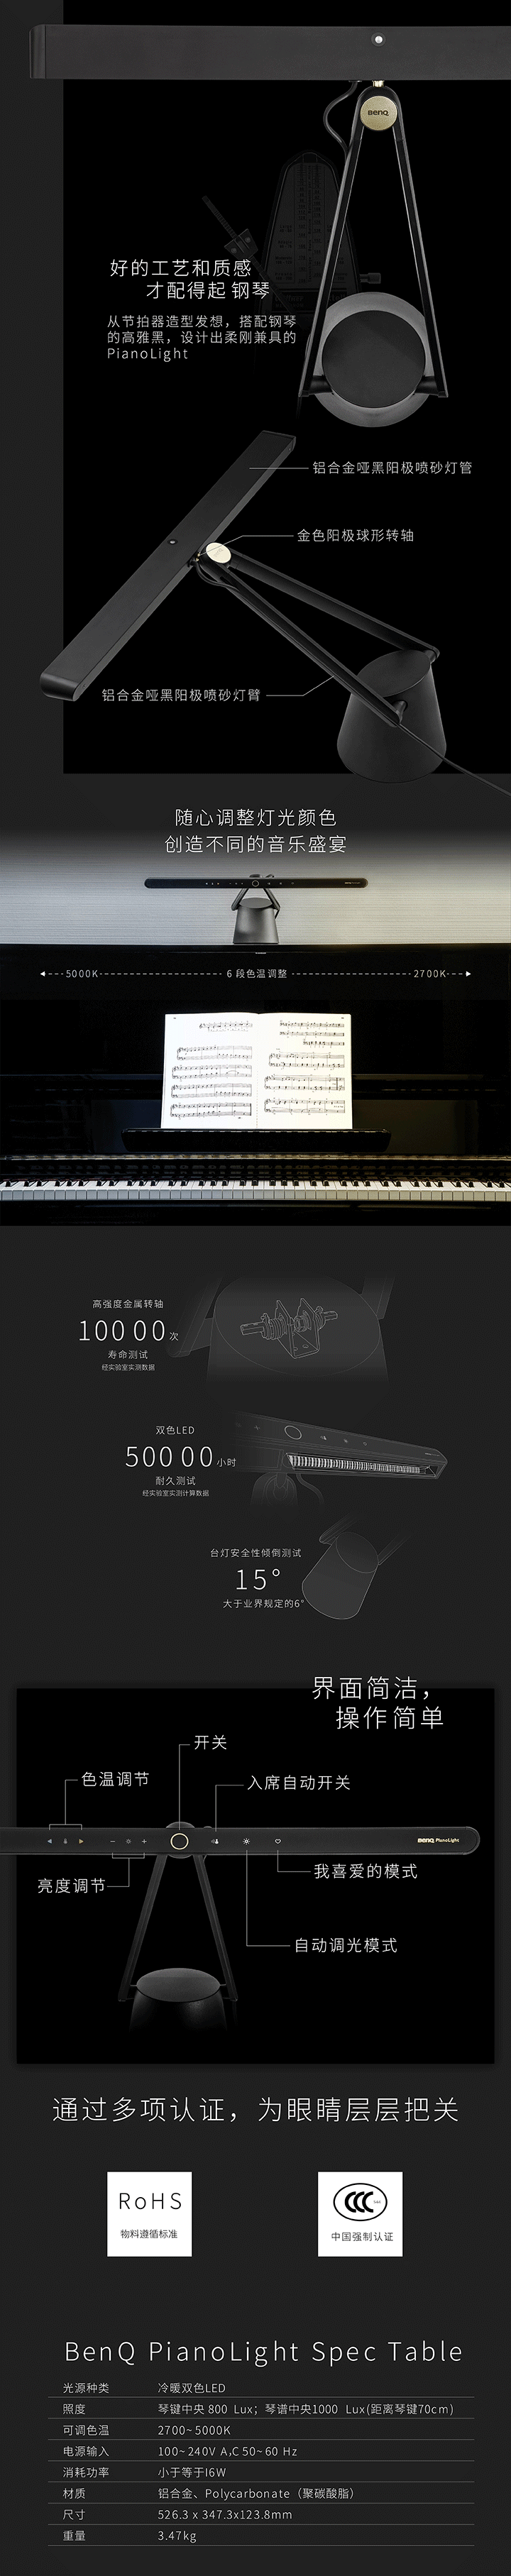 明基PianoLight智能钢琴灯免费试用,评测